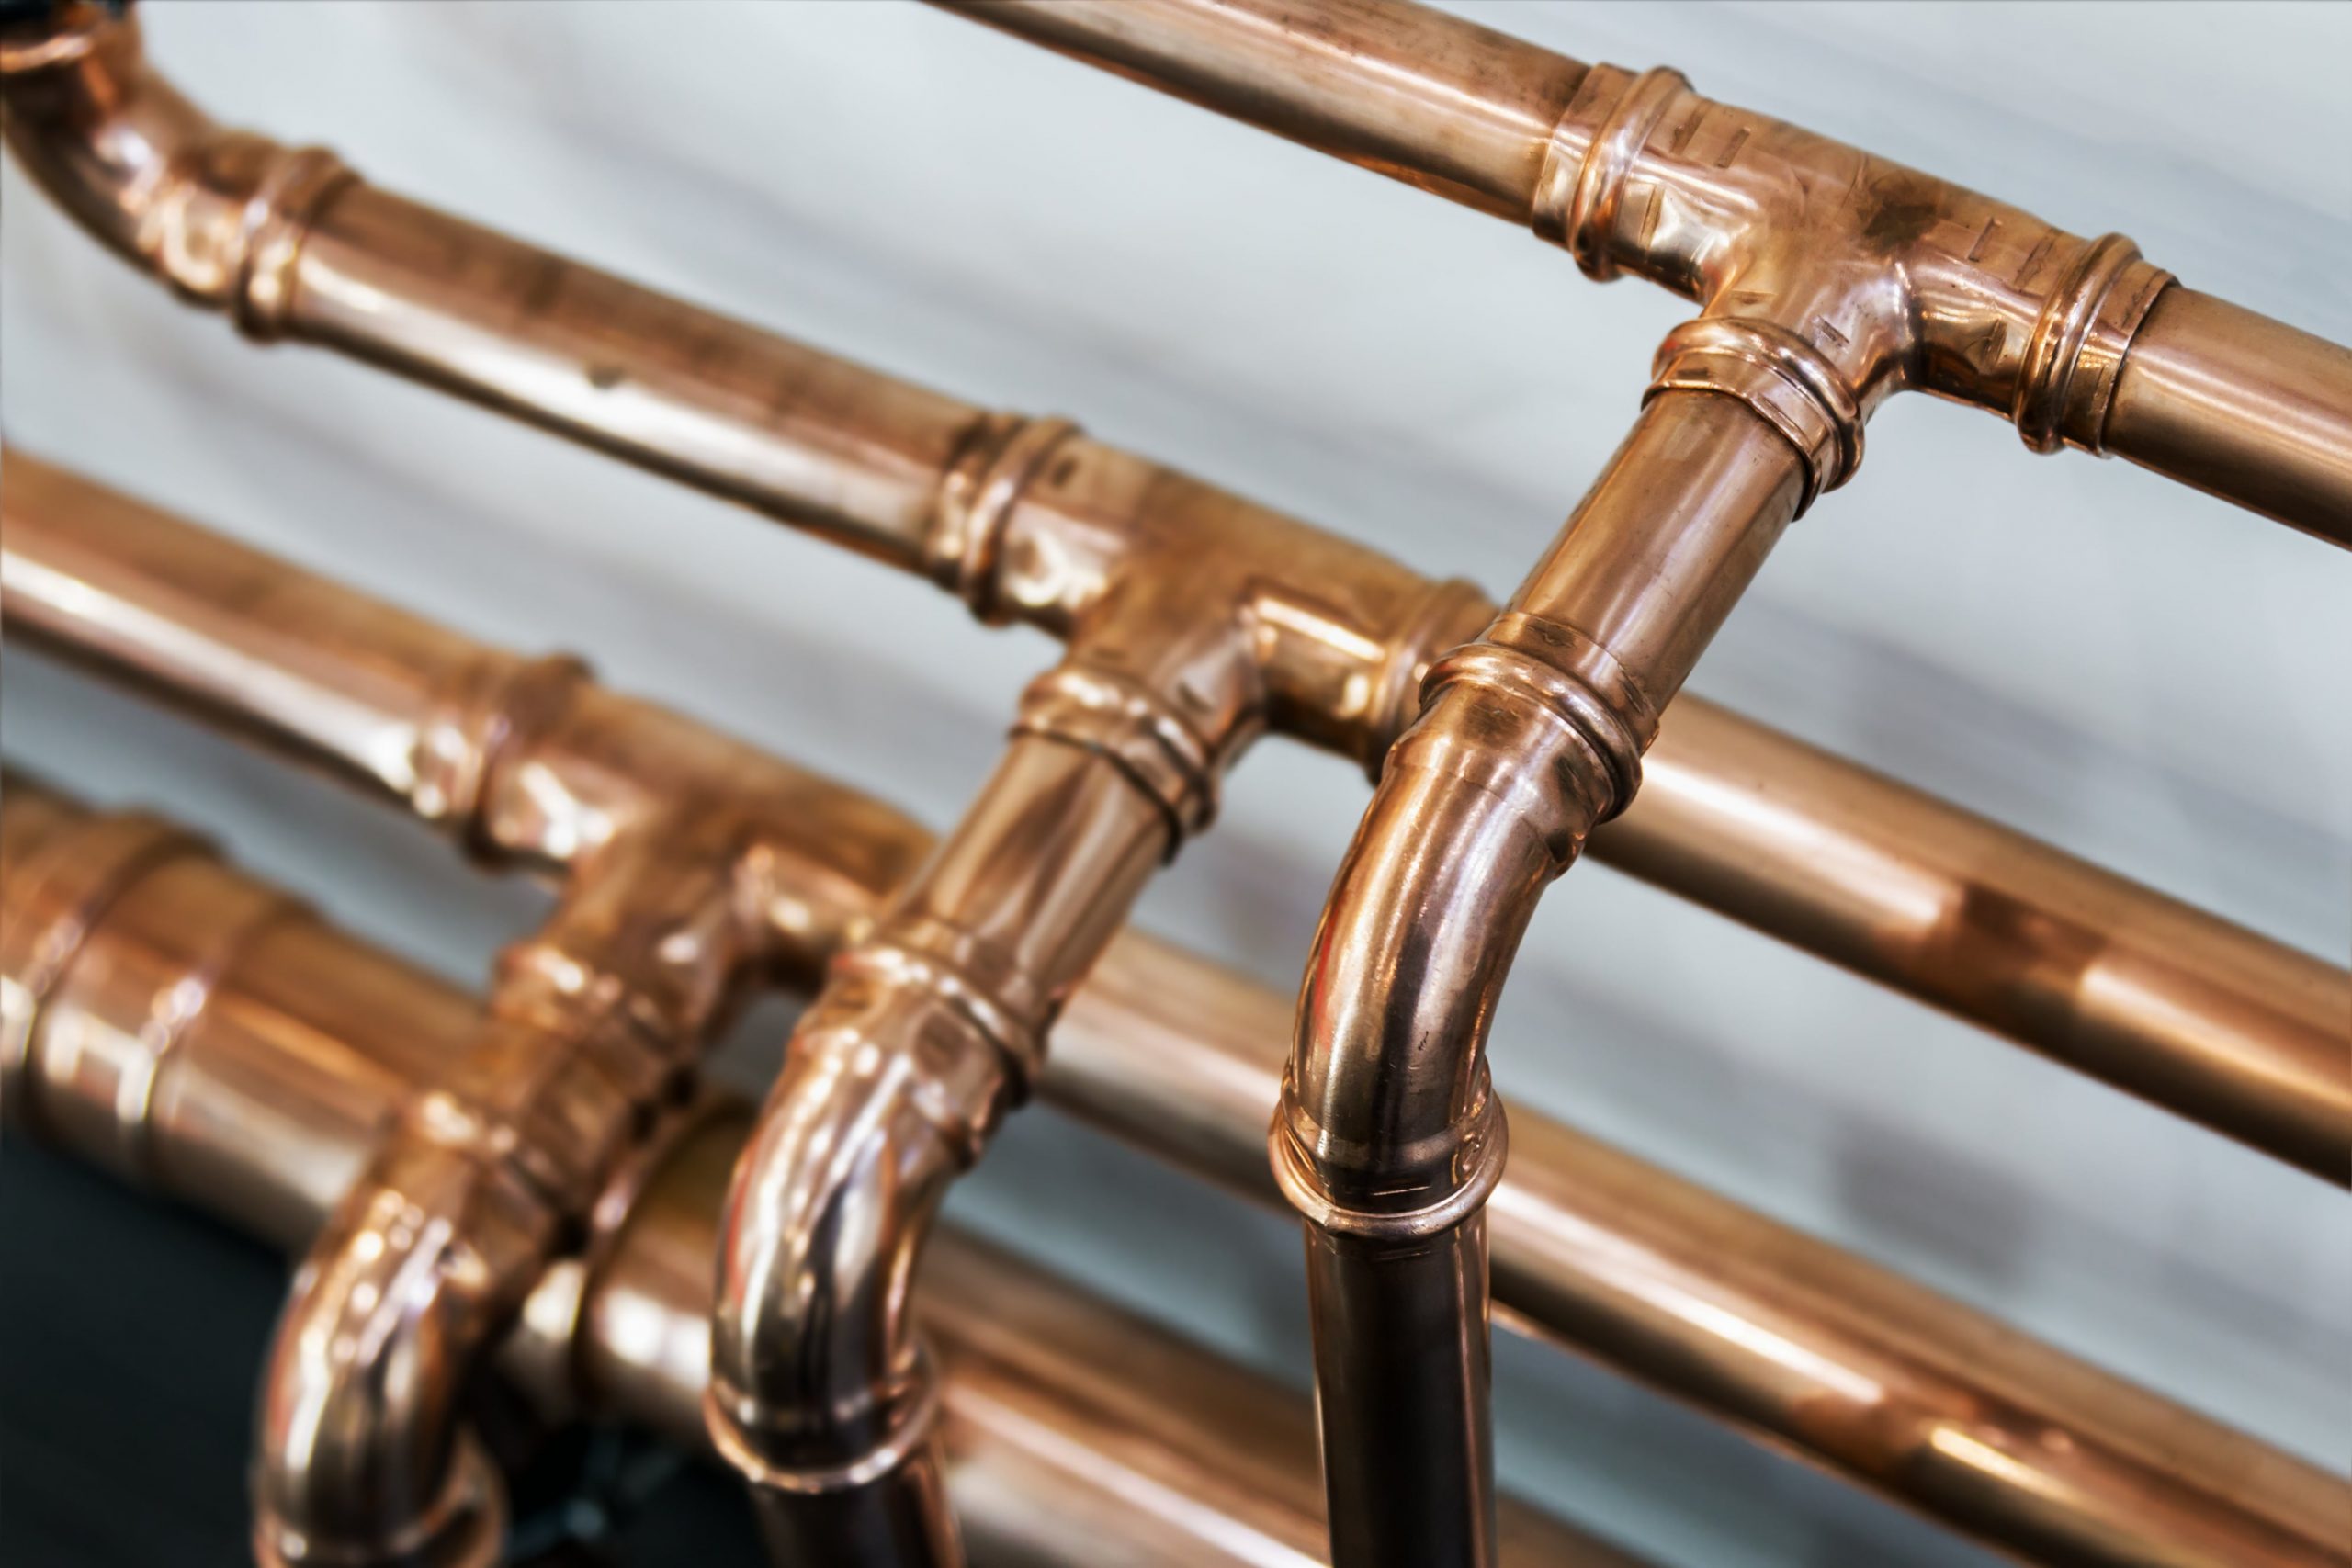 copper press pipes